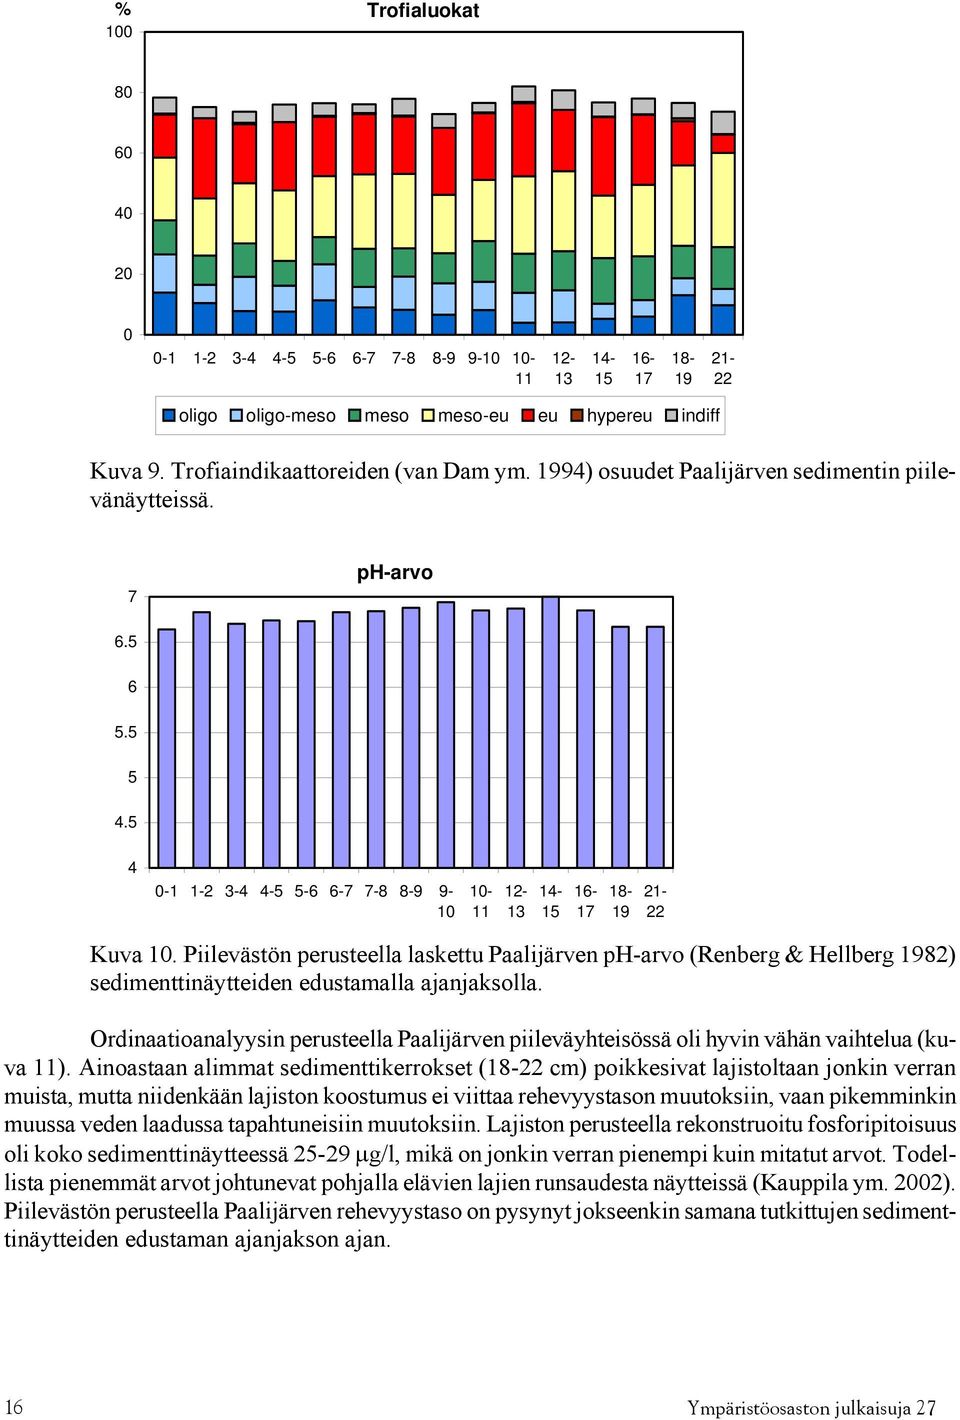 Piilevästön perusteella laskettu Paalijärven ph-arvo (Renberg & Hellberg 1982) sedimenttinäytteiden edustamalla ajanjaksolla.